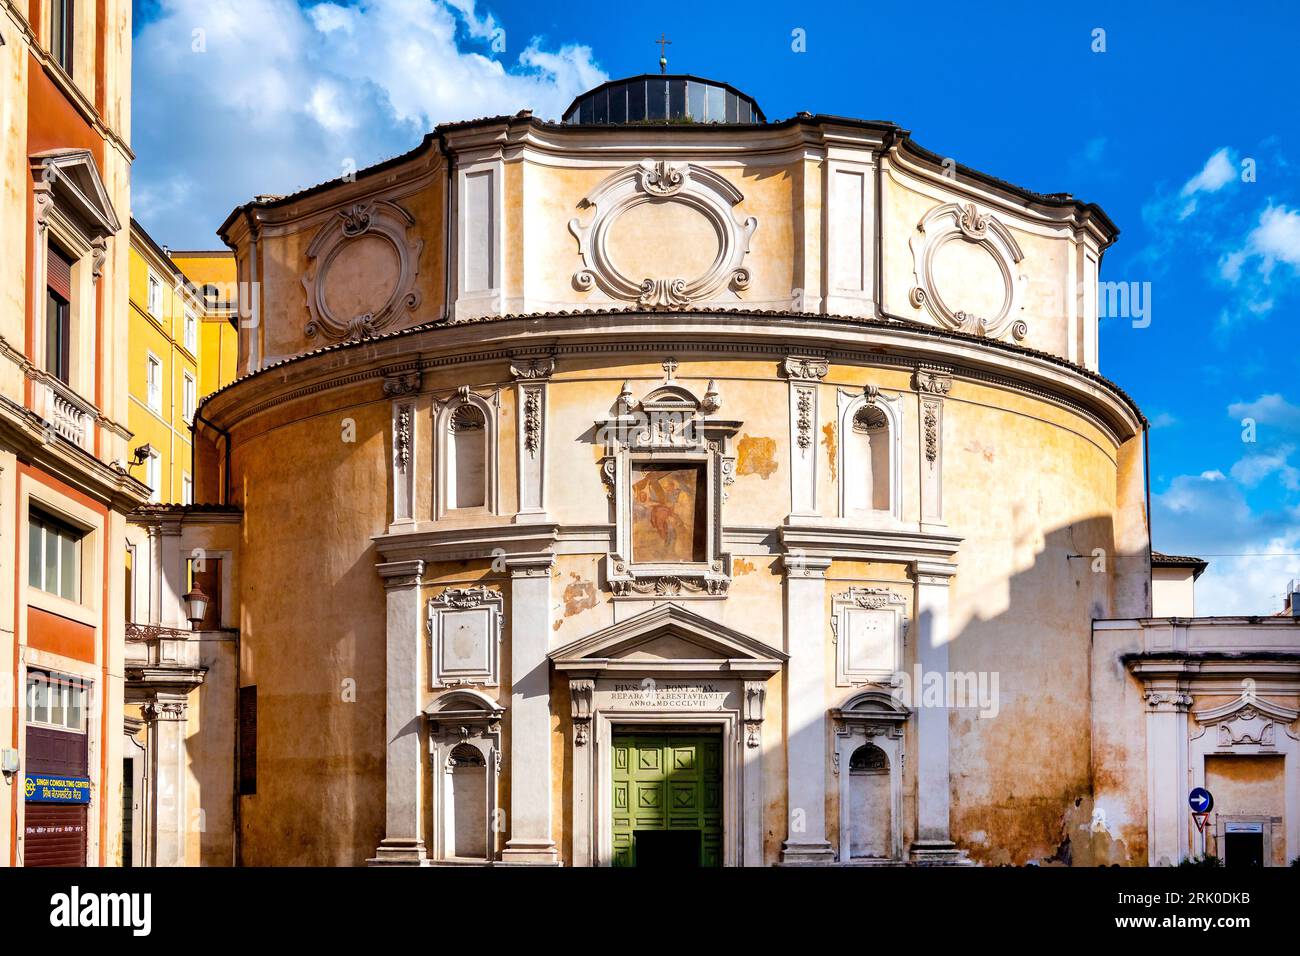 Façade de l'église de San Bernardo alle terme, Rome, Italie Banque D'Images